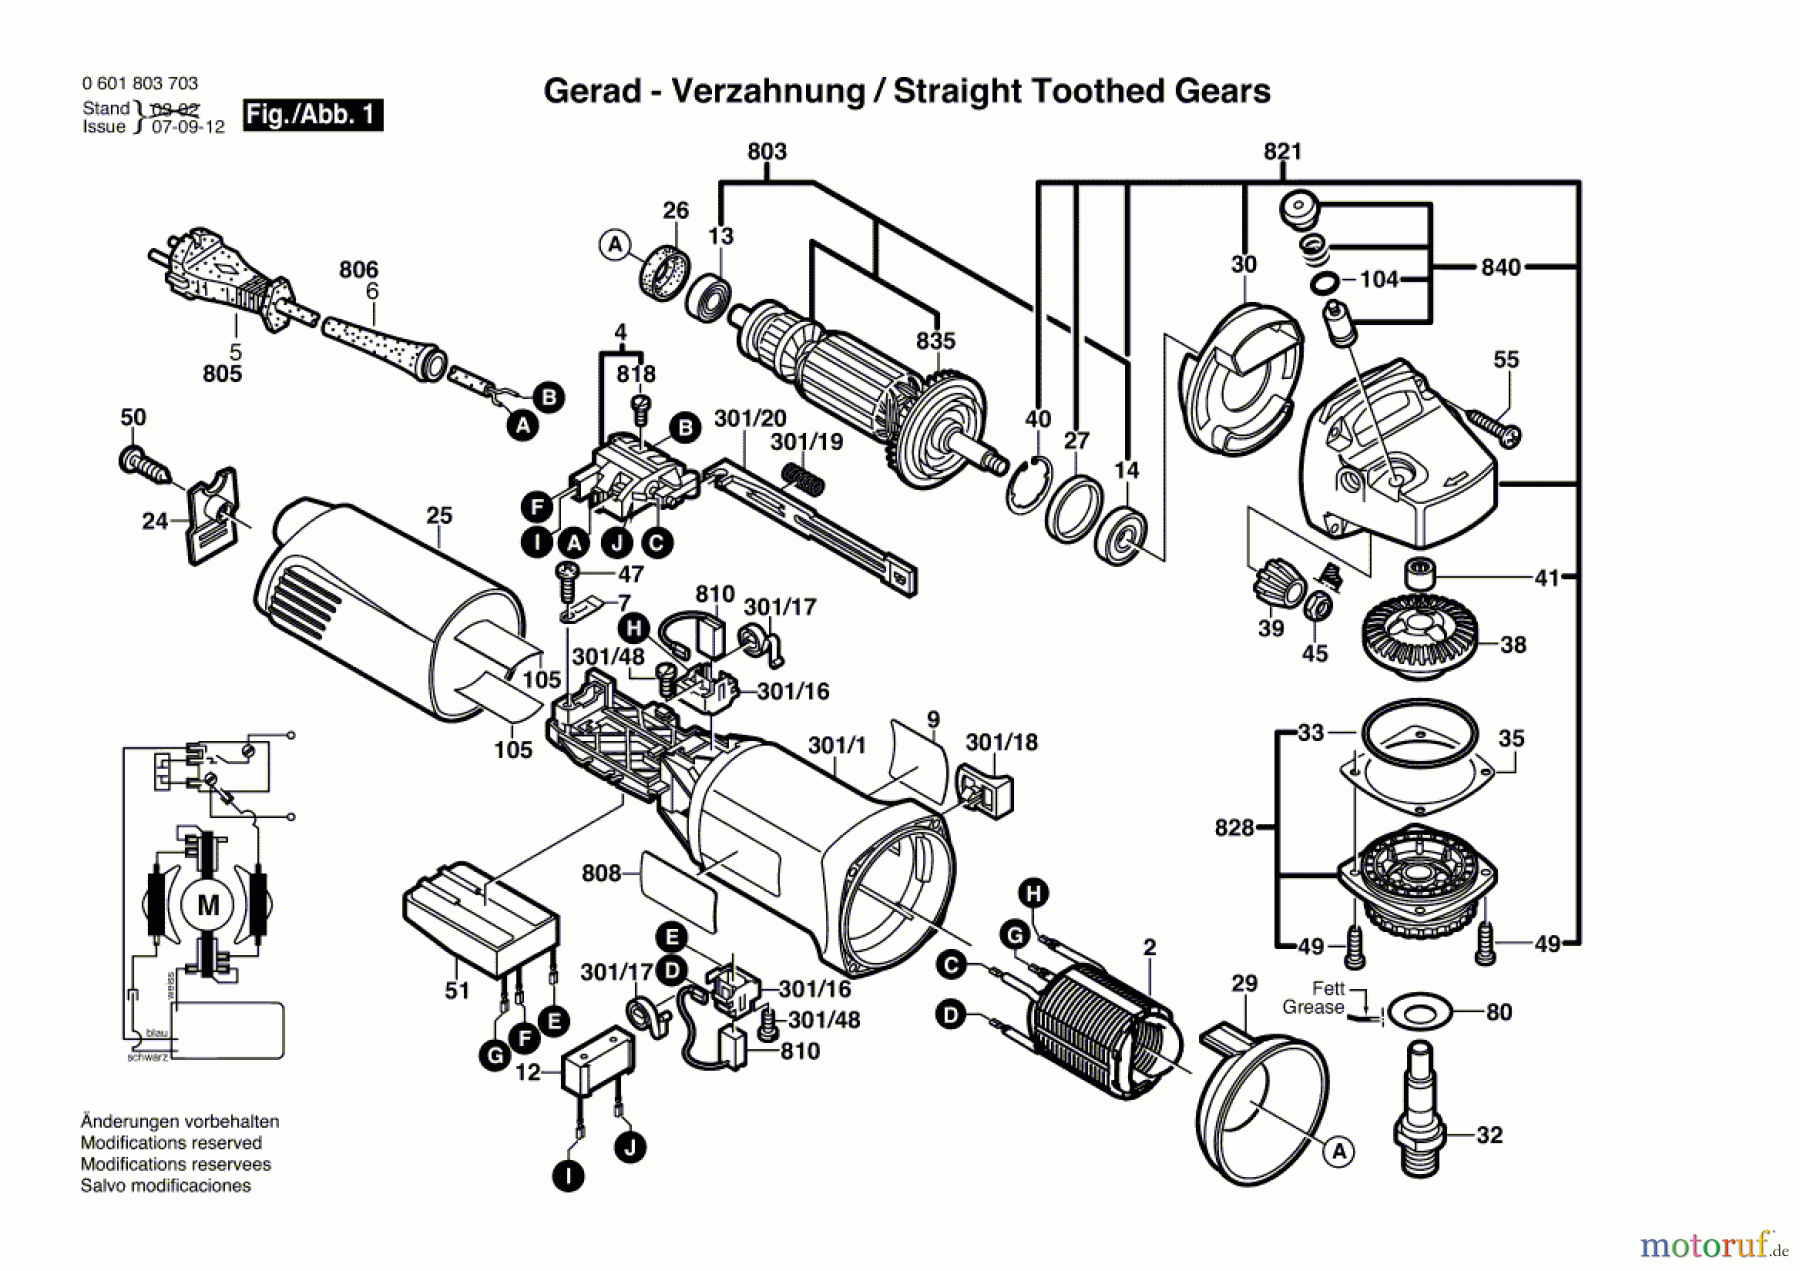  Bosch Werkzeug Winkelschleifer GWS 10-125CE Seite 1